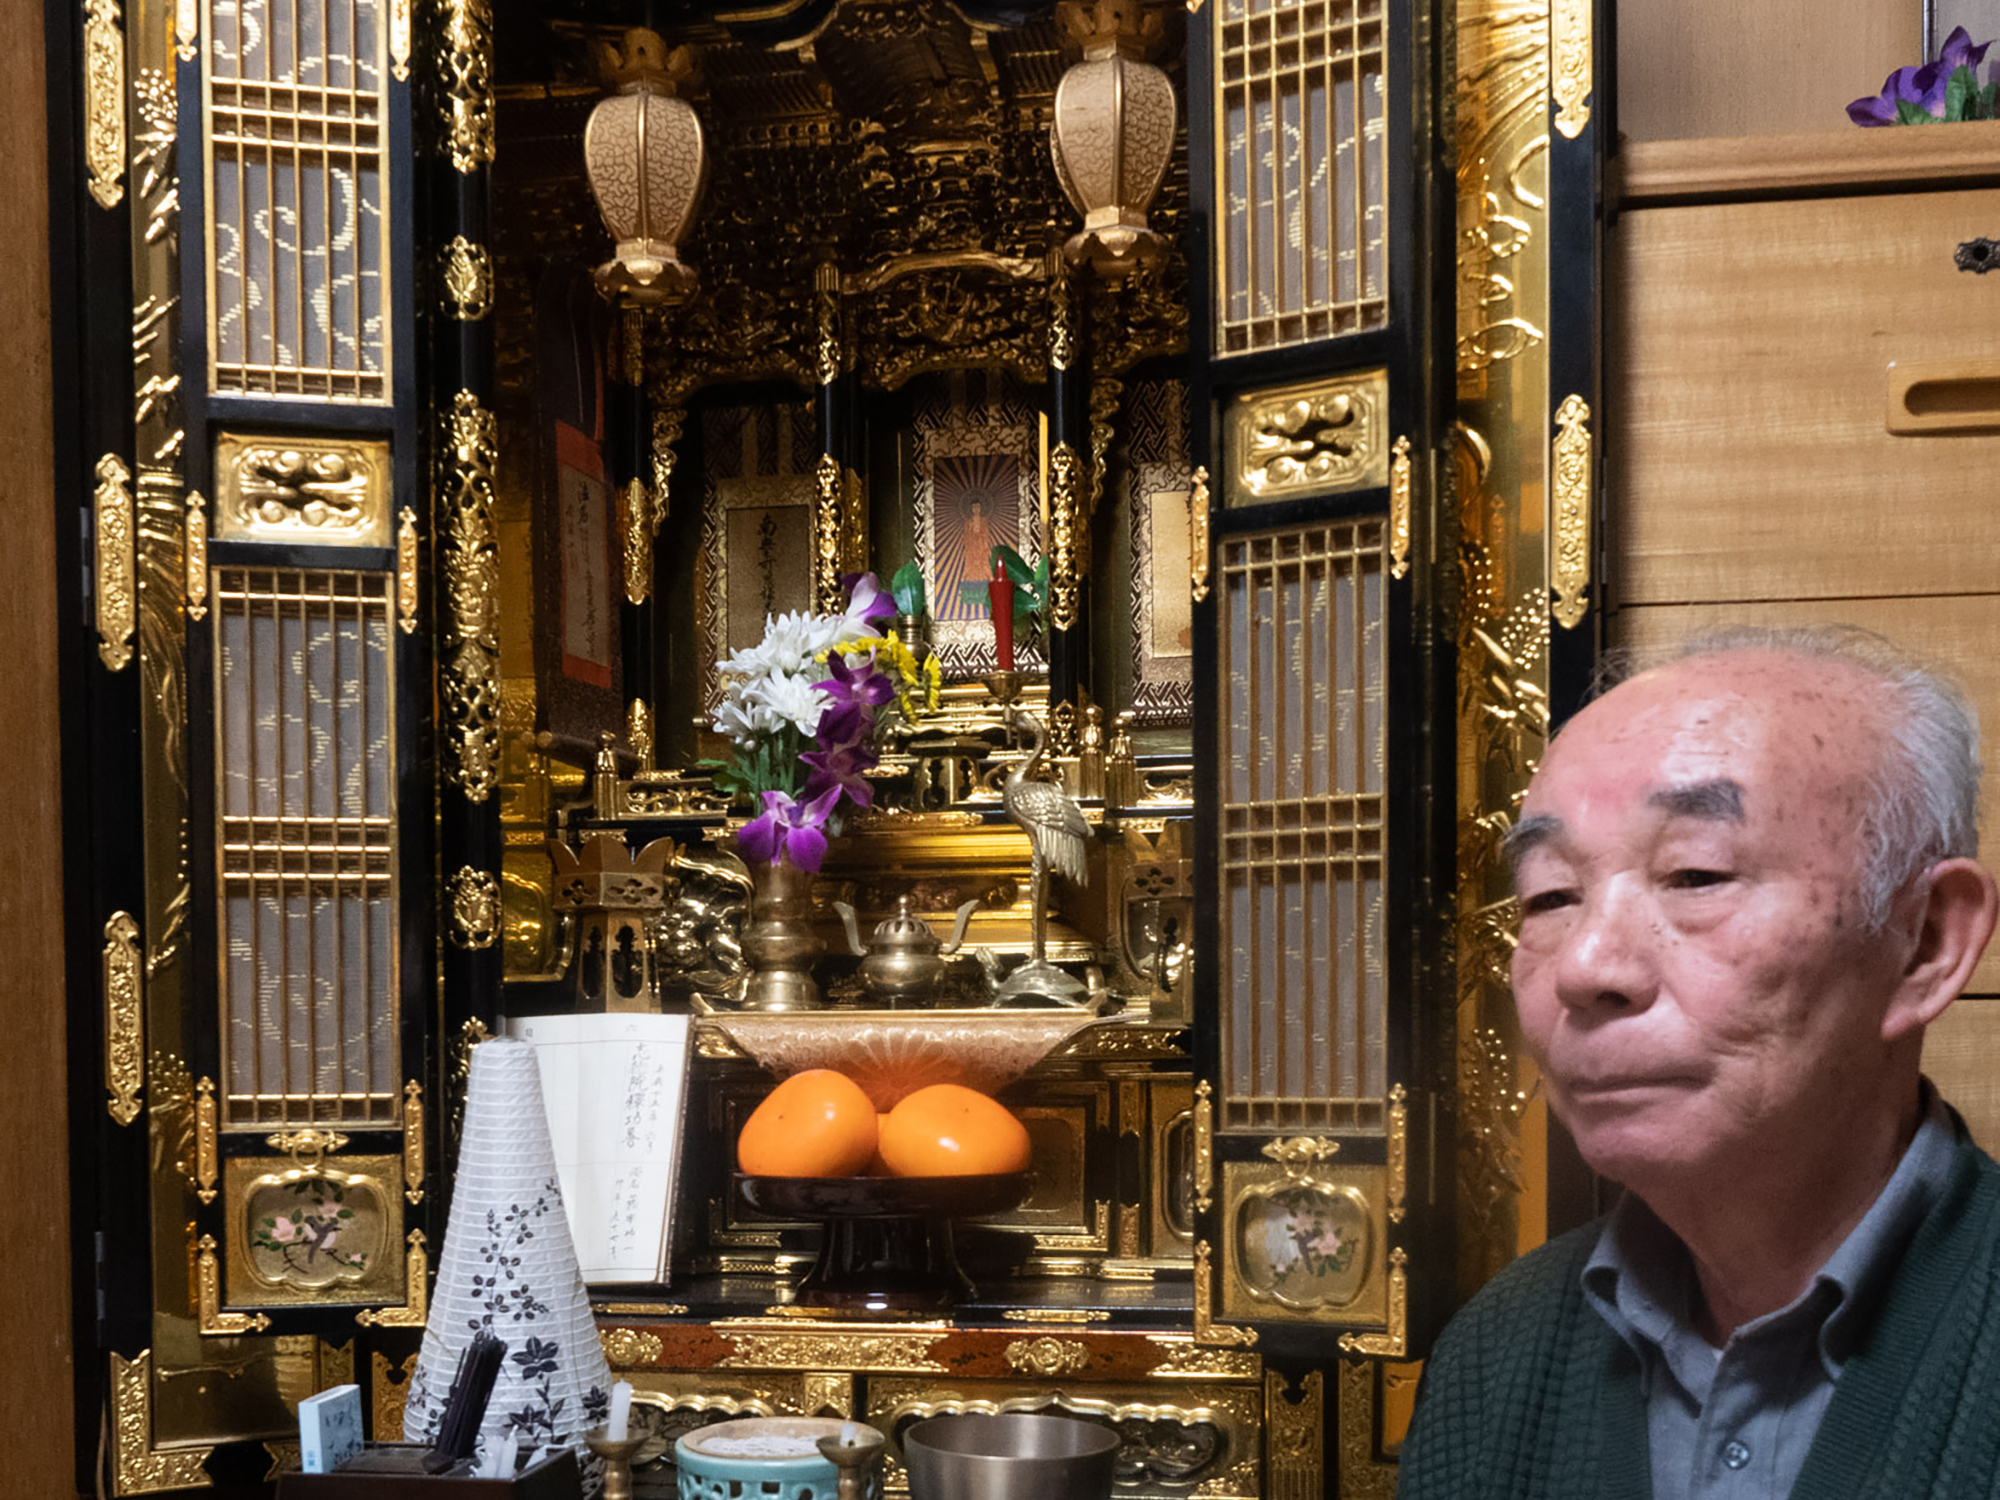 新潟仏壇制作の職人だった父が、昭和初期に小樽に渡って創業しました。仏壇の中でも、随所に金箔を貼った金箔仏壇の仕上げや修理を行っていました。